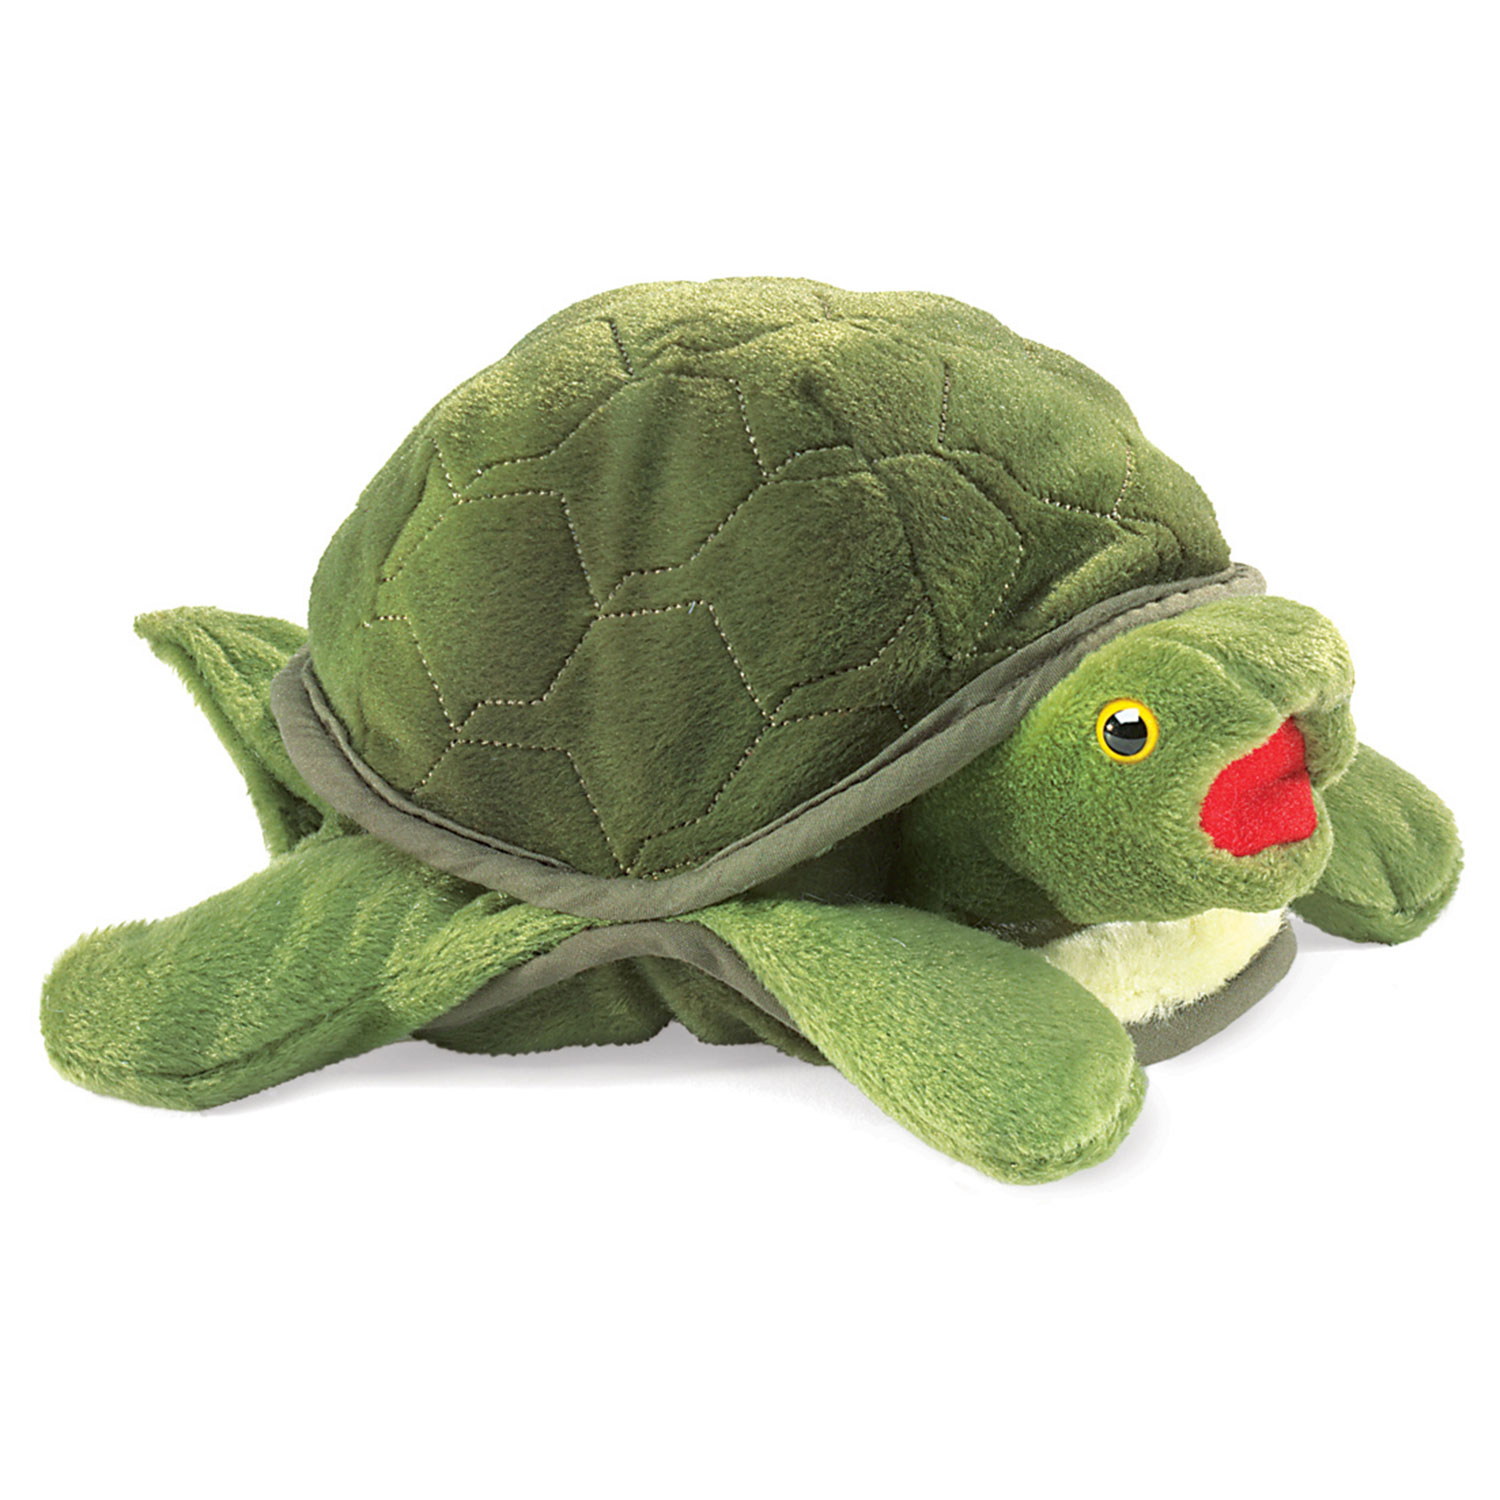 Kleine Schildkröte / Baby Turtle